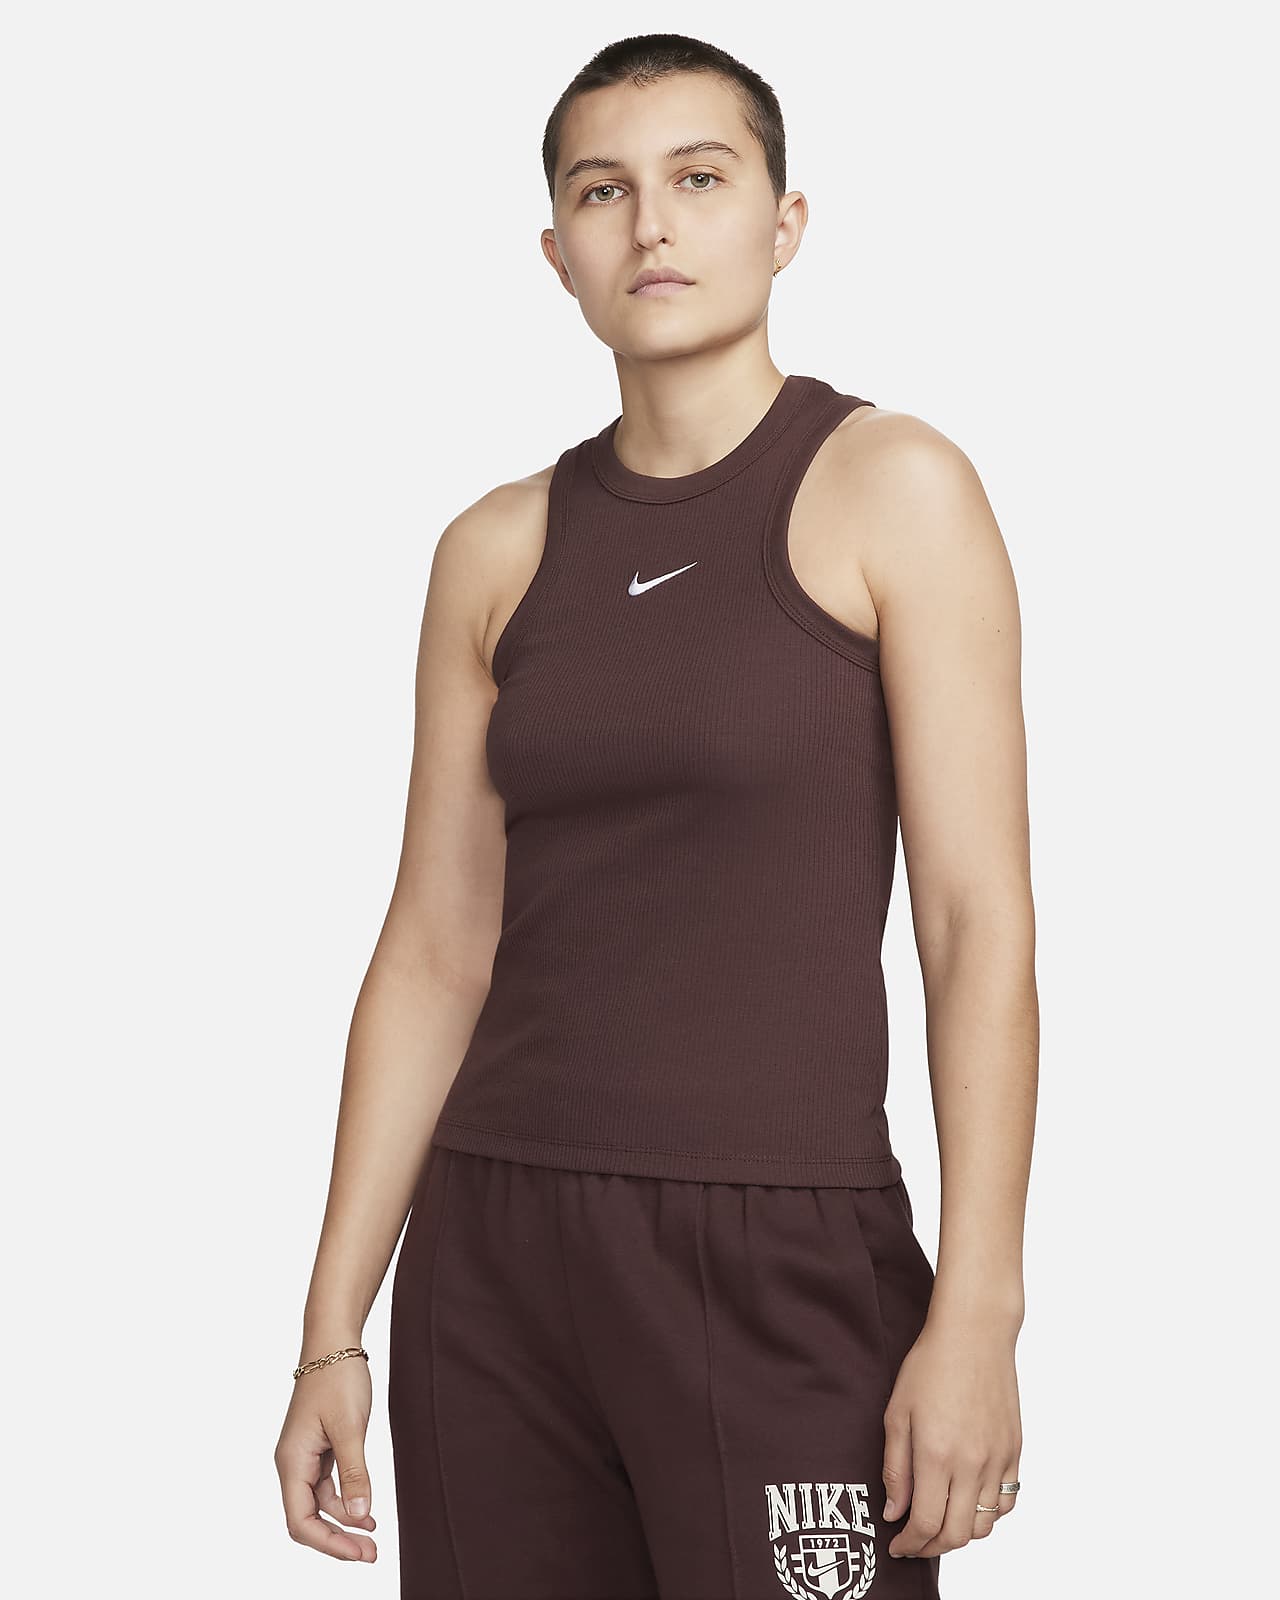 Canotta Nike Sportswear – Donna